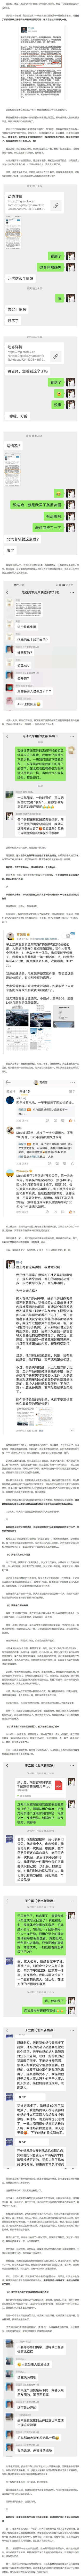 极狐 阿尔法t 北汽极狐总裁于立国羞辱反映问题的用户：在北京收拾你跟玩一样